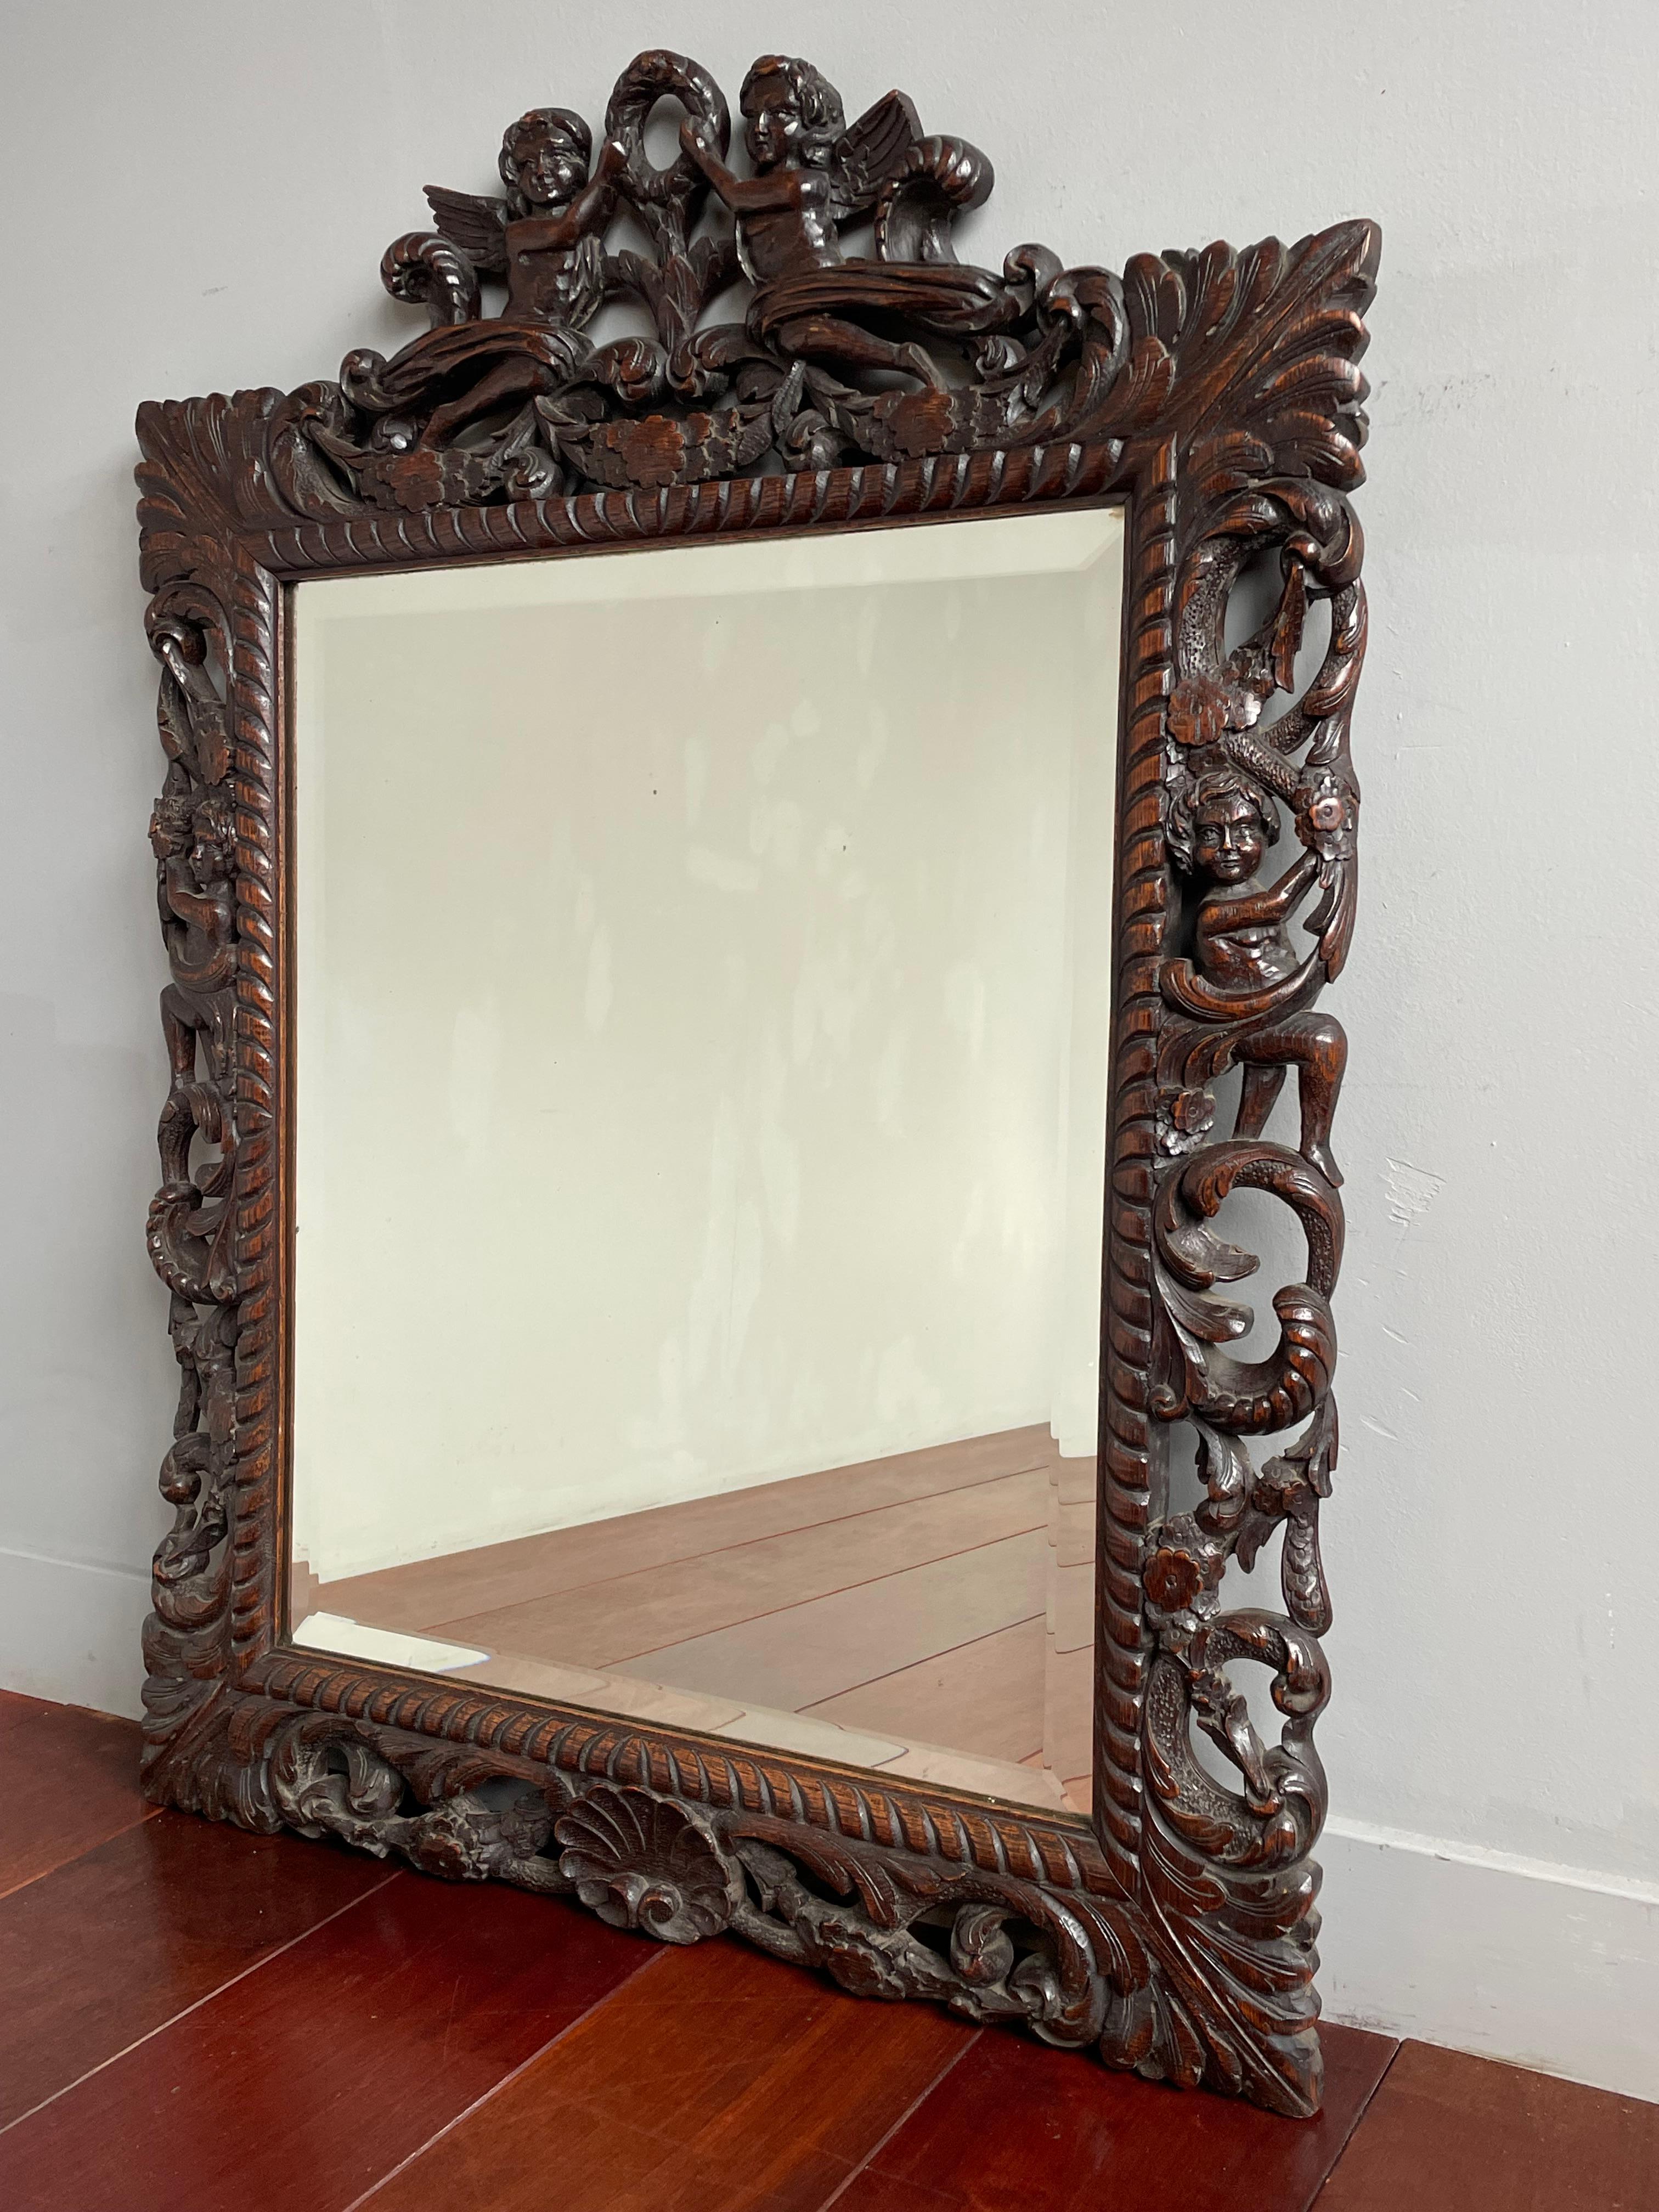 Große Qualität geschnitzt und ideale Größe Renaissance Revival Wand oder Kaminsims Spiegel.

Wenn Sie mit den Stilelementen der Renaissance vertraut sind, werden Sie diesen großen Spiegel sofort als eine Renaissance-Revival-Antik erkennen. In diesem